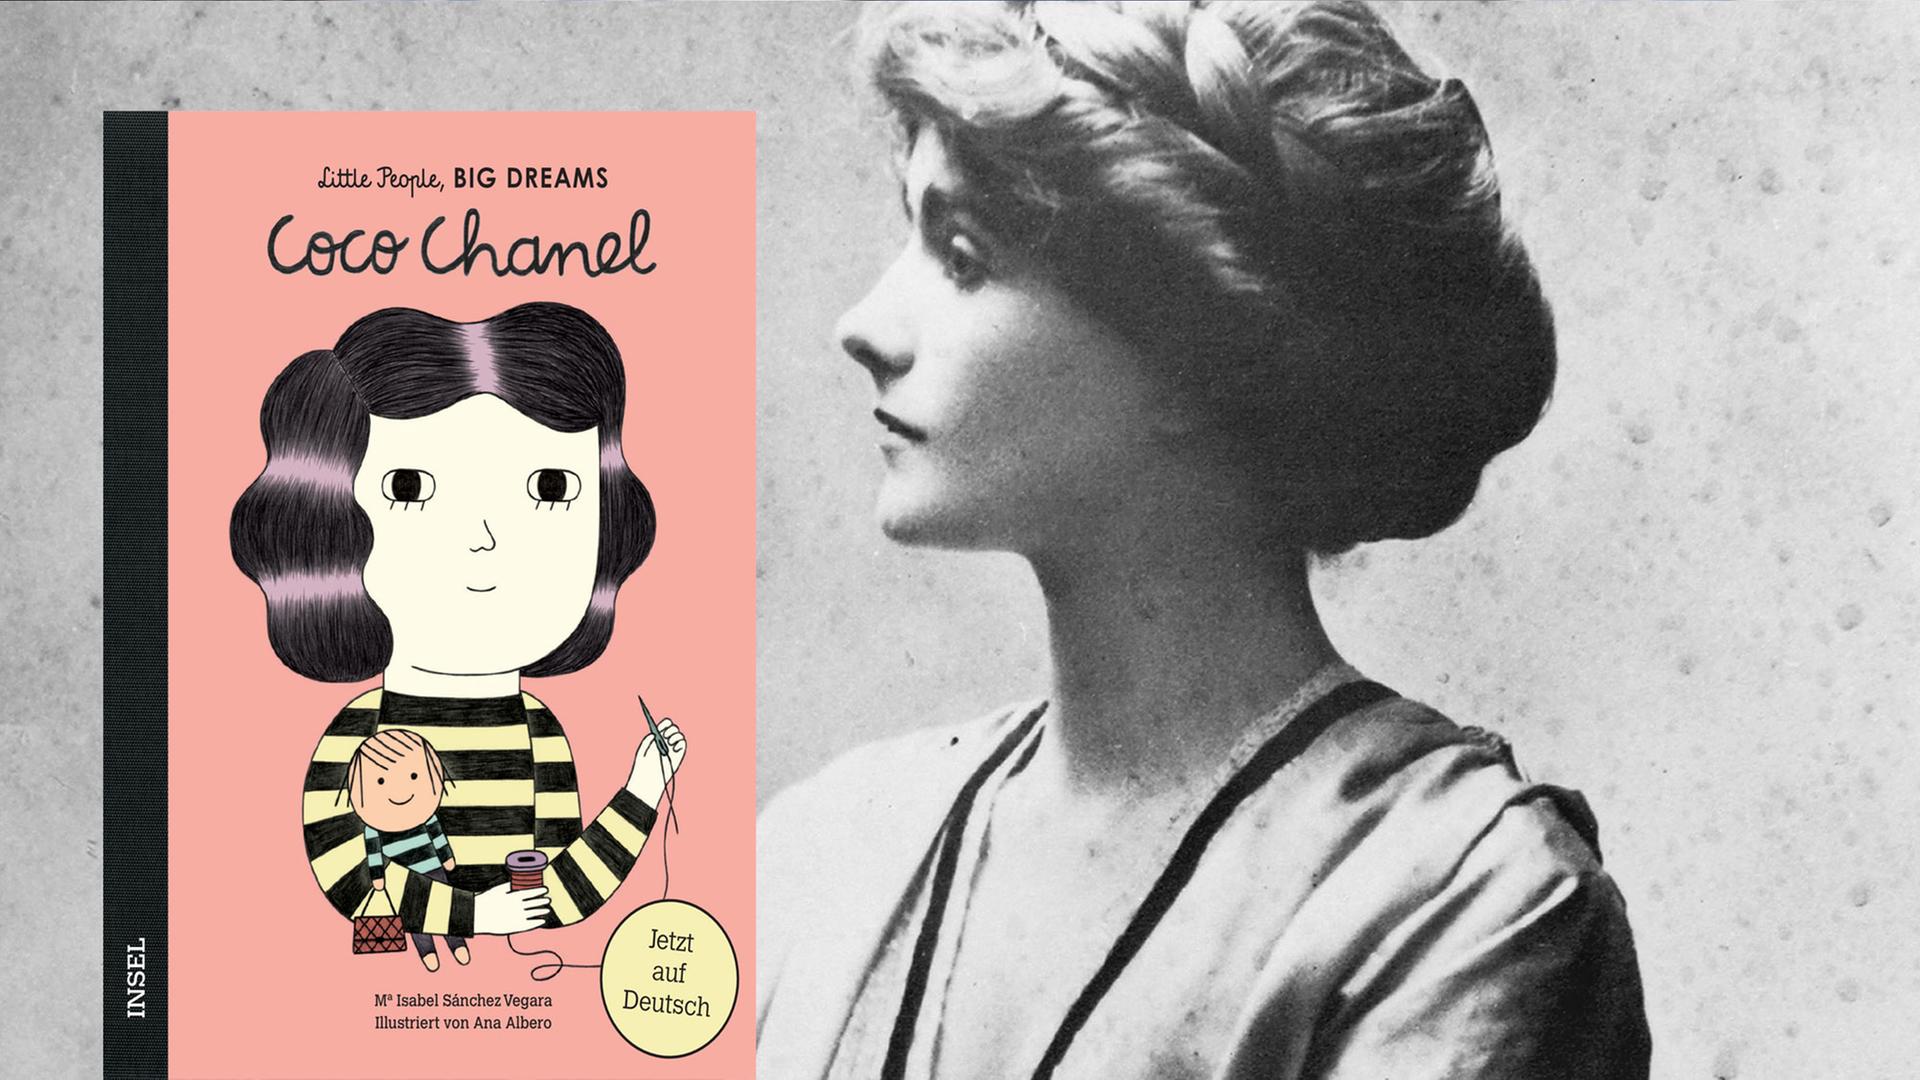 Das Bild zeigt das Buchcover des Bandes "Coco Chanel" von Isabel Sánchez Vegara - im Hintergrund ist eine Porträtaufnahme der Designerin aus dem Jahr 1909 zu sehen.